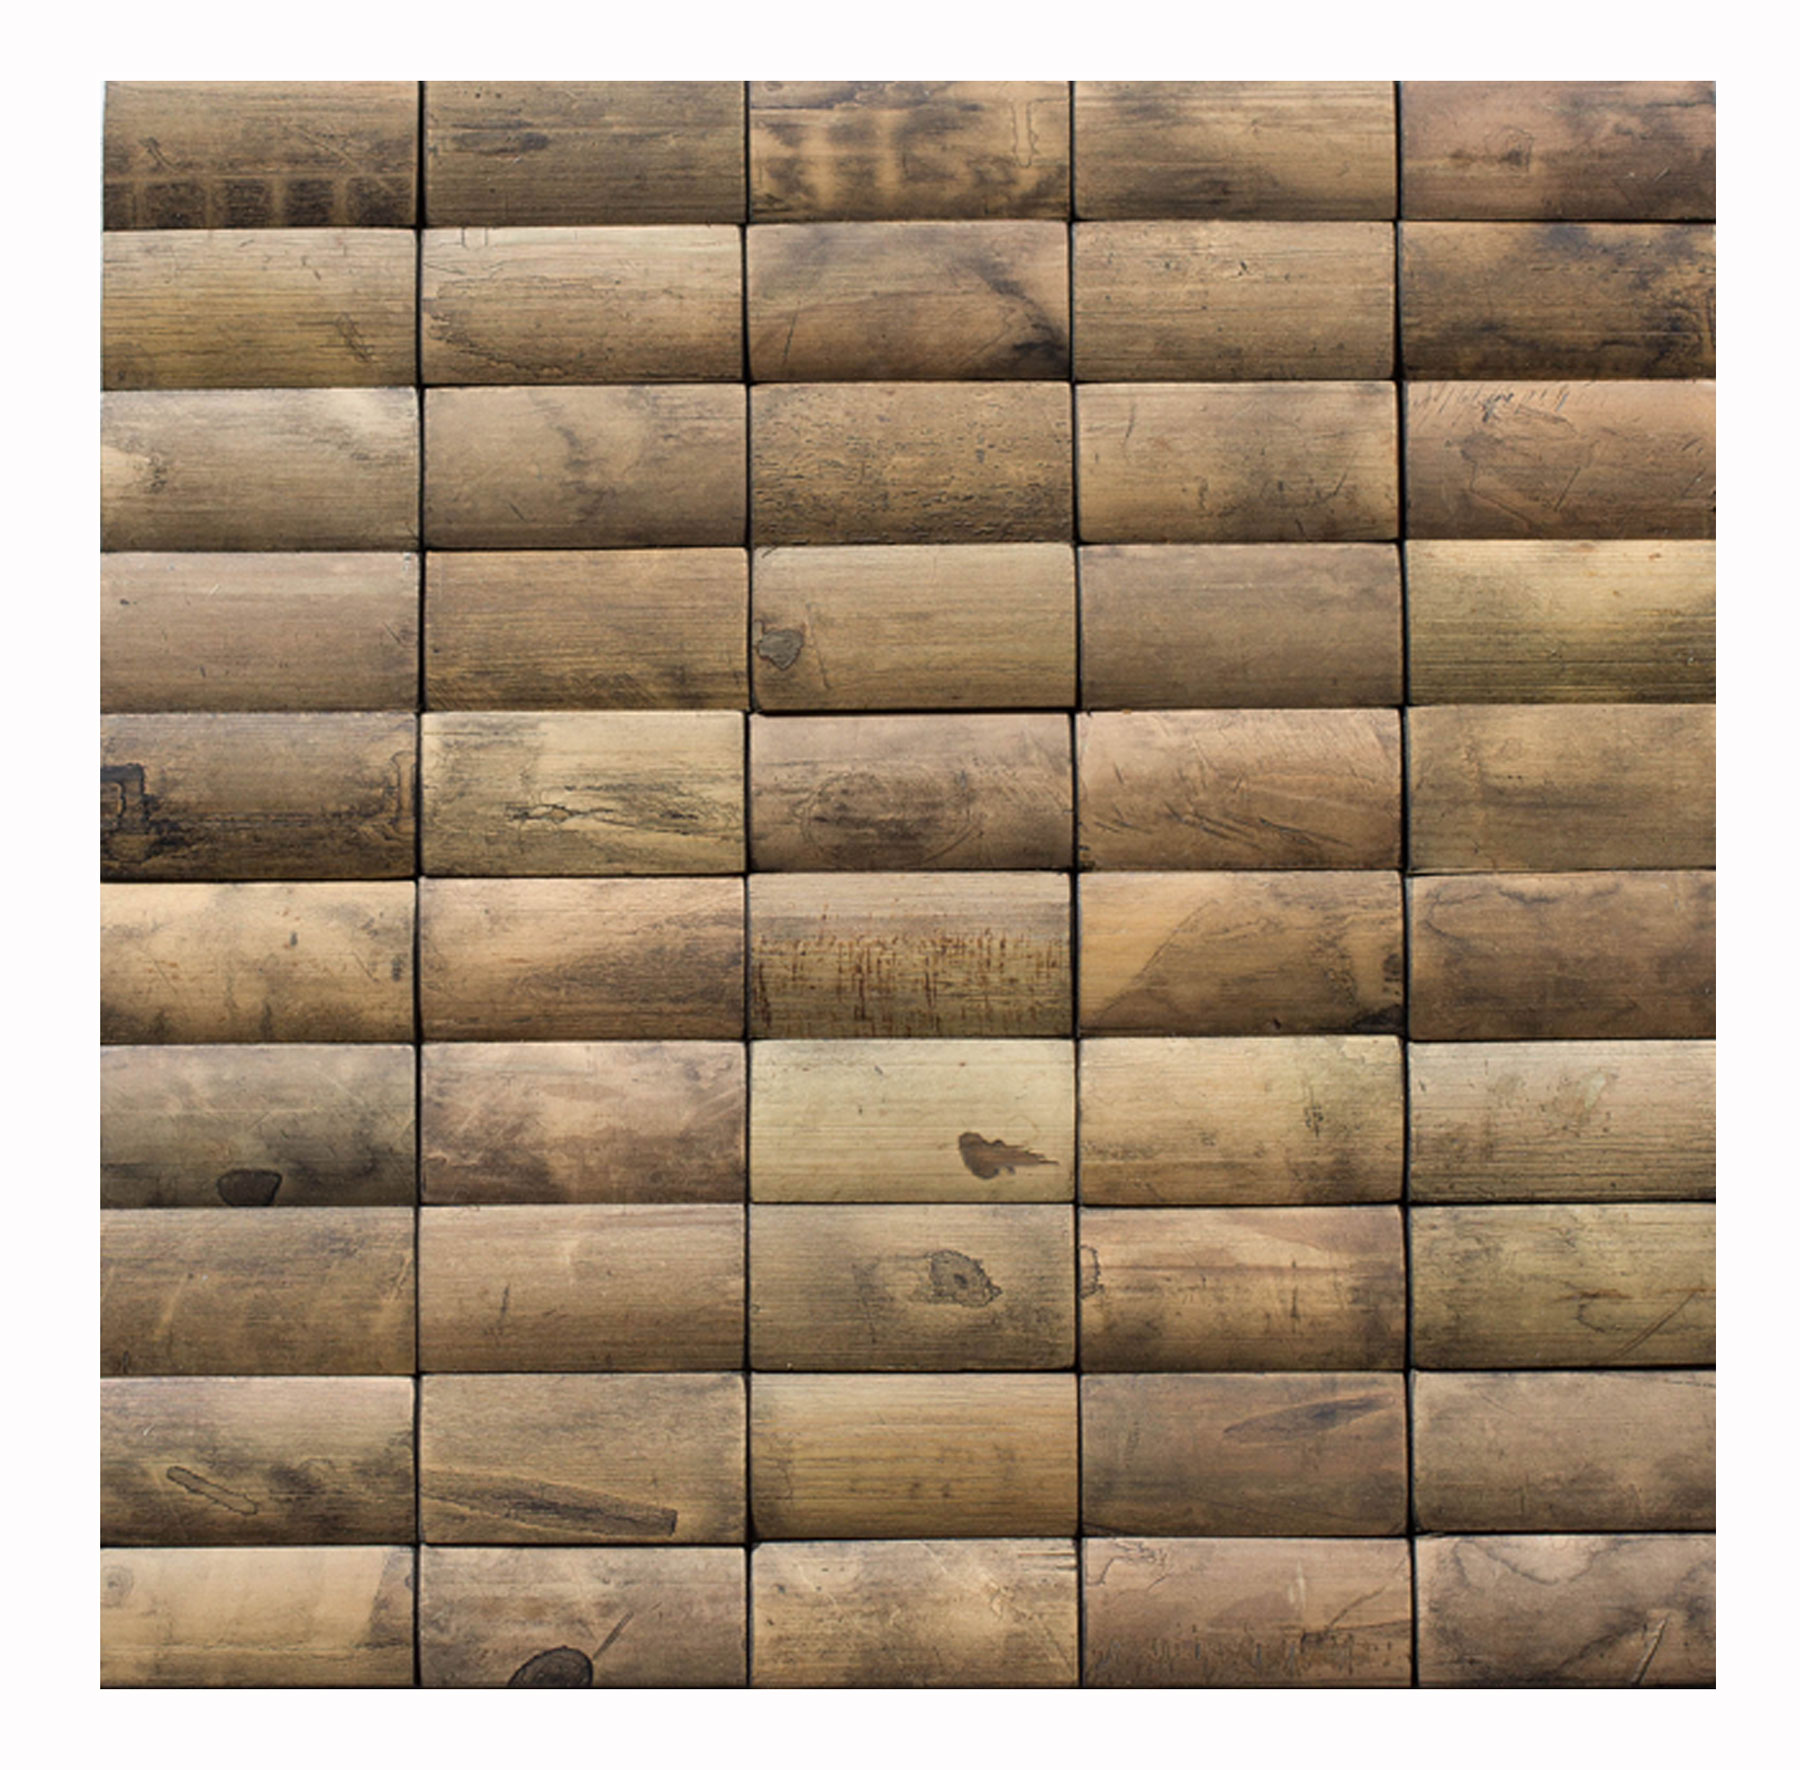 bamboo_mosaic_wall-cladding_wall-design